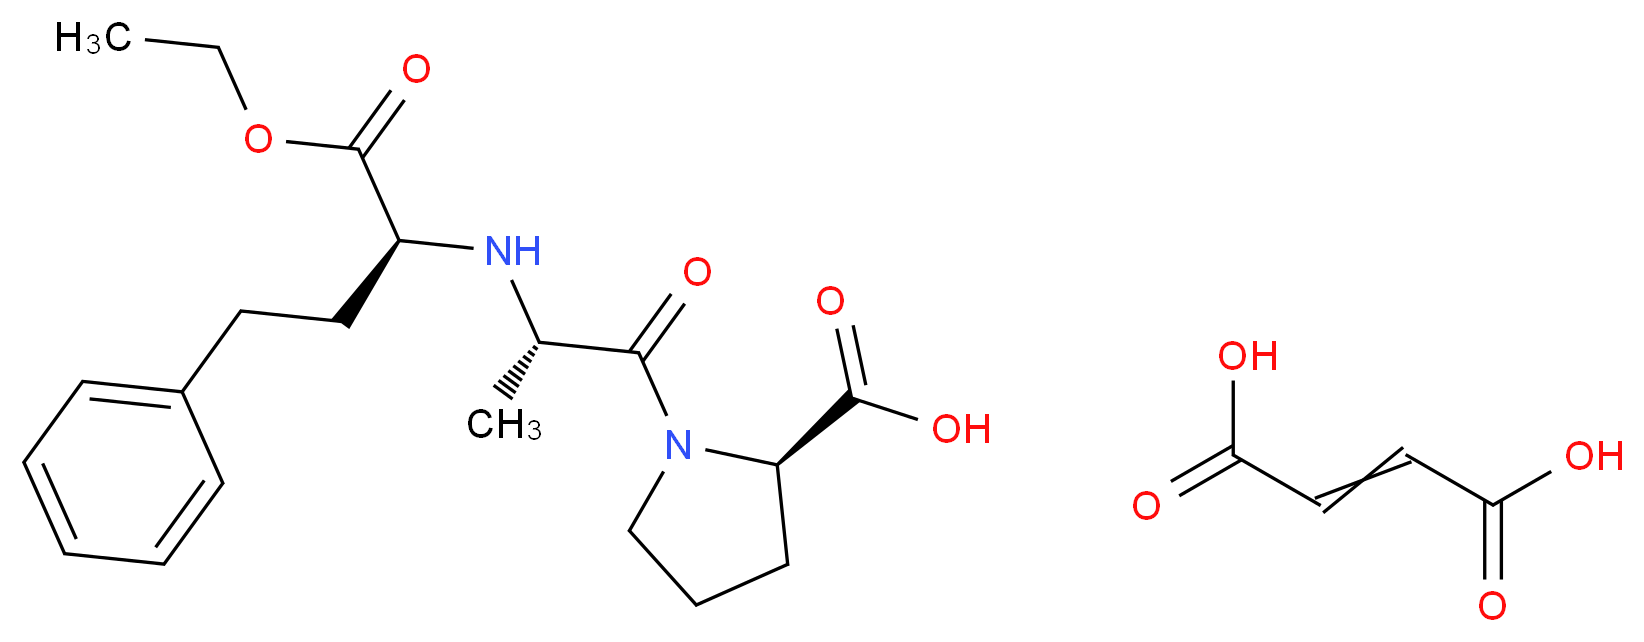 Enalapril maleate salt_Molecular_structure_CAS_76095-16-4)